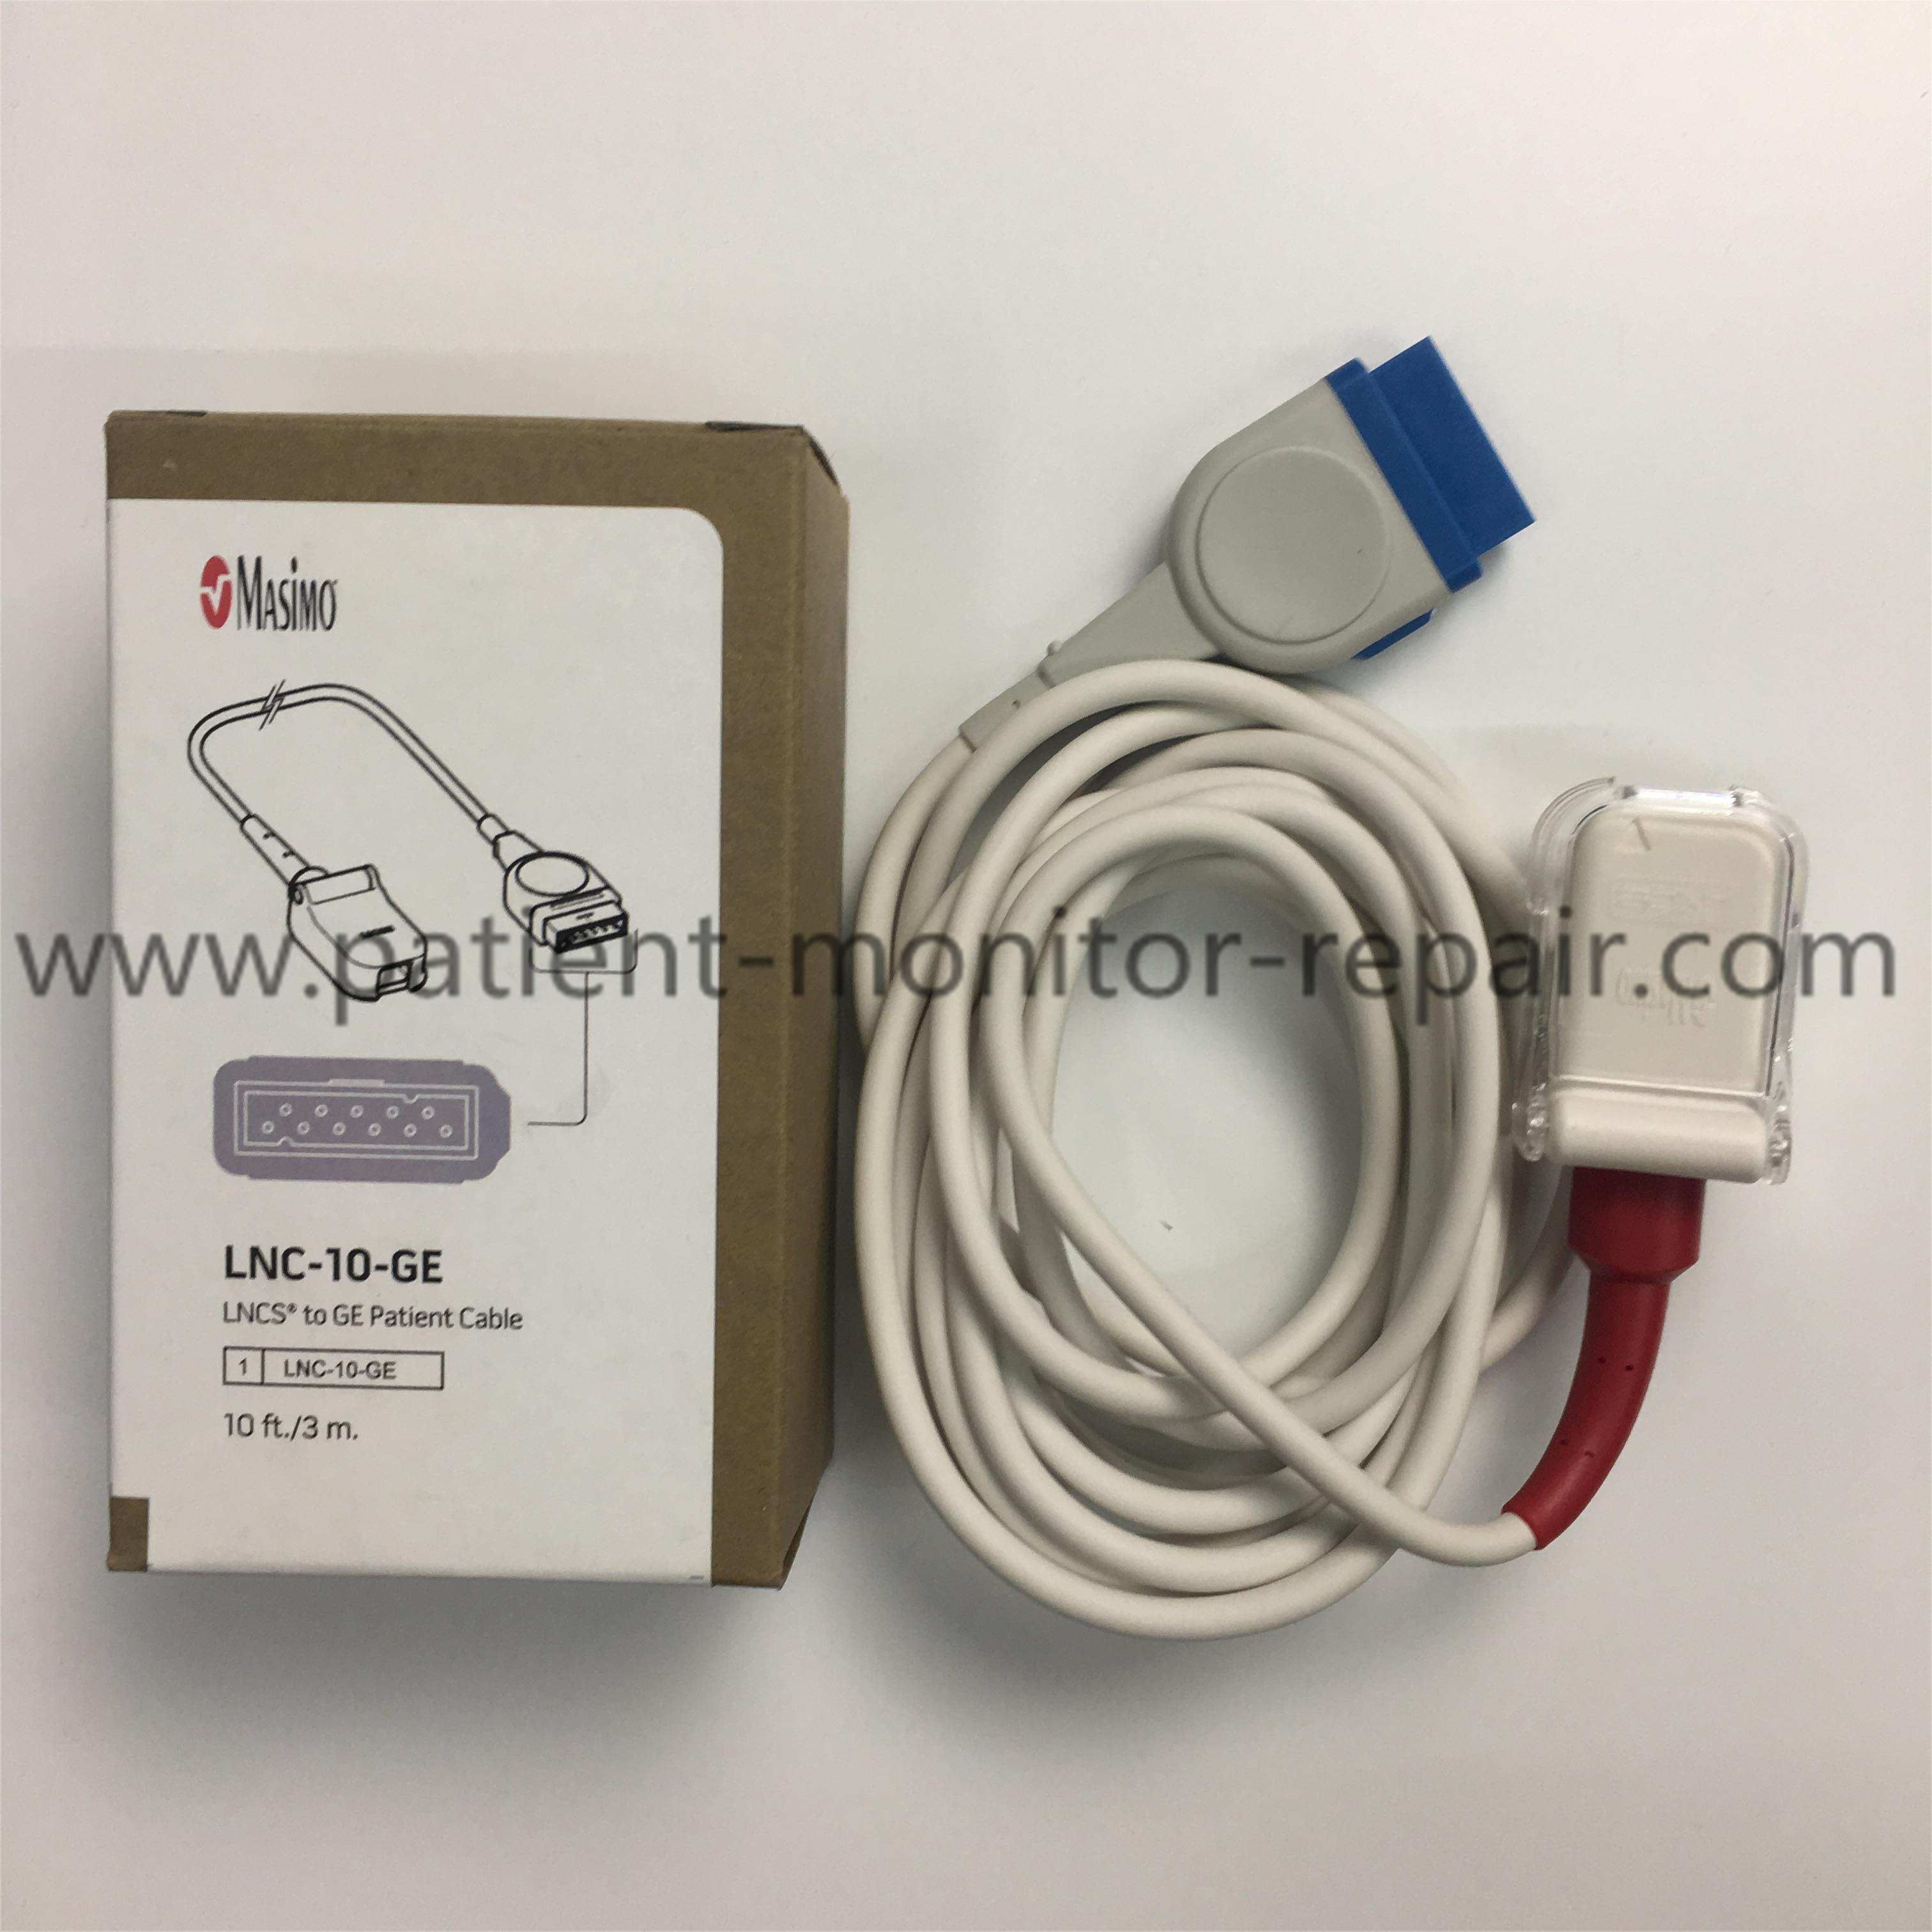 Masimo LNCS GE 2016 LNC-10-GE SpO2 Sensor Patient Cable 10ft 3m - 8.jpg